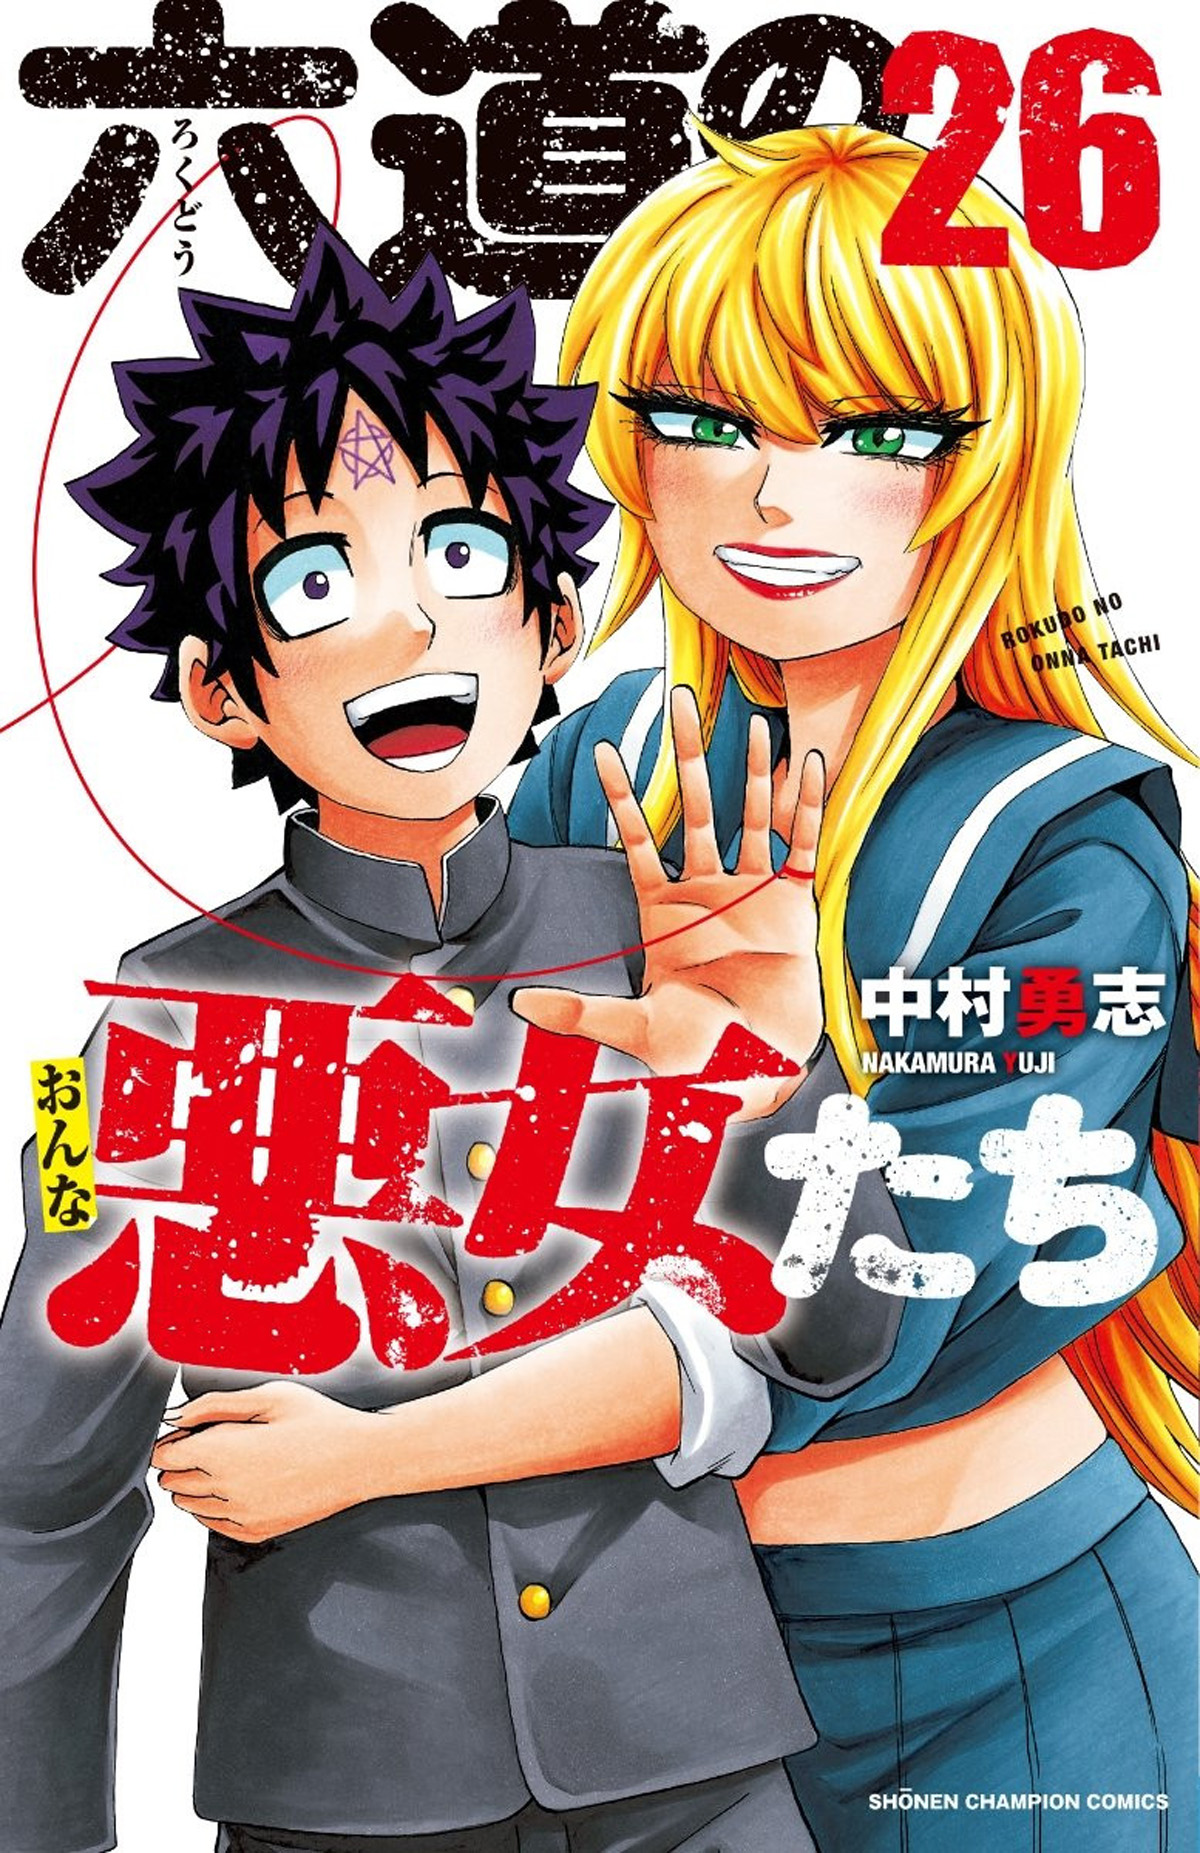 Anime Rokudou no Onna-tachi được cho là chuyển thể từ manga Những ...